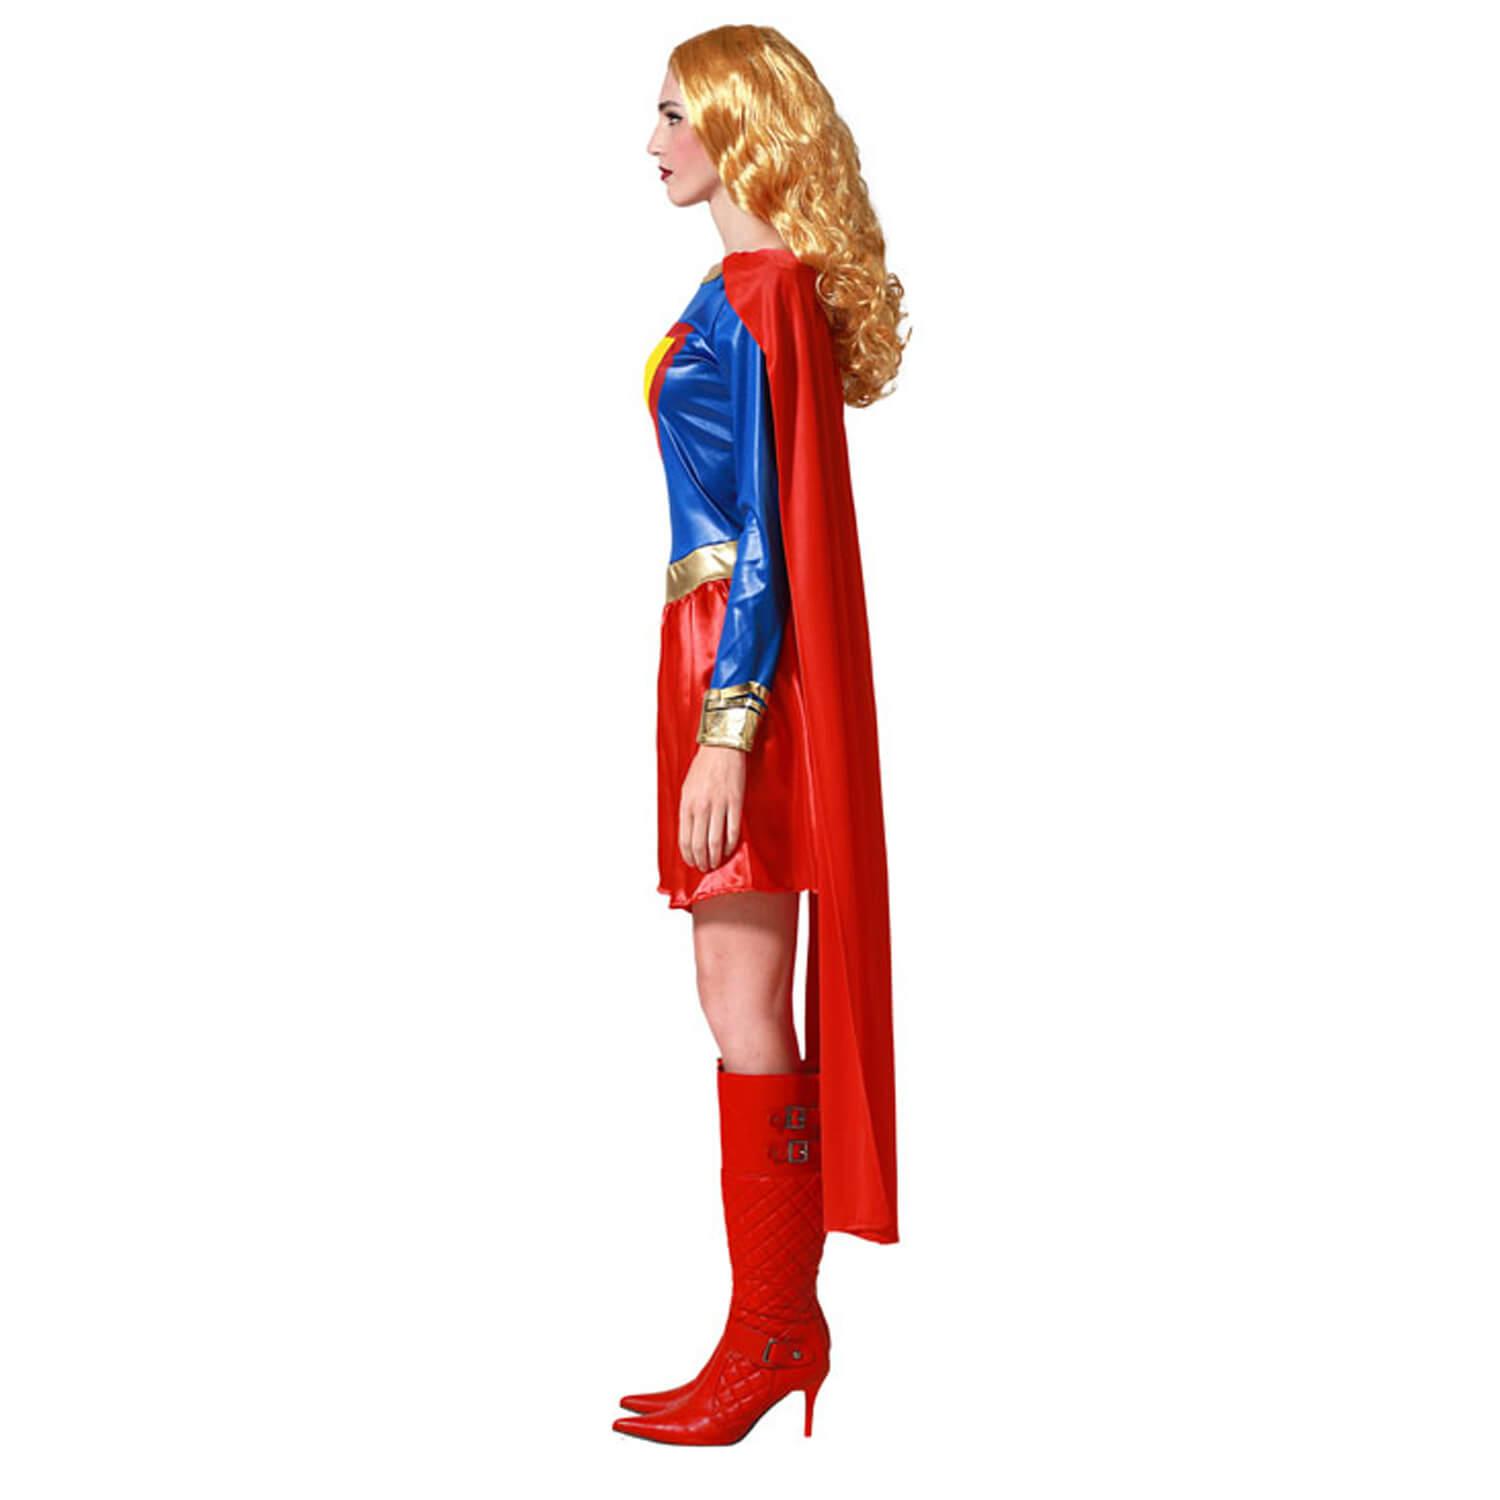 Déguisement Super Heroine bleu et rouge pour femme